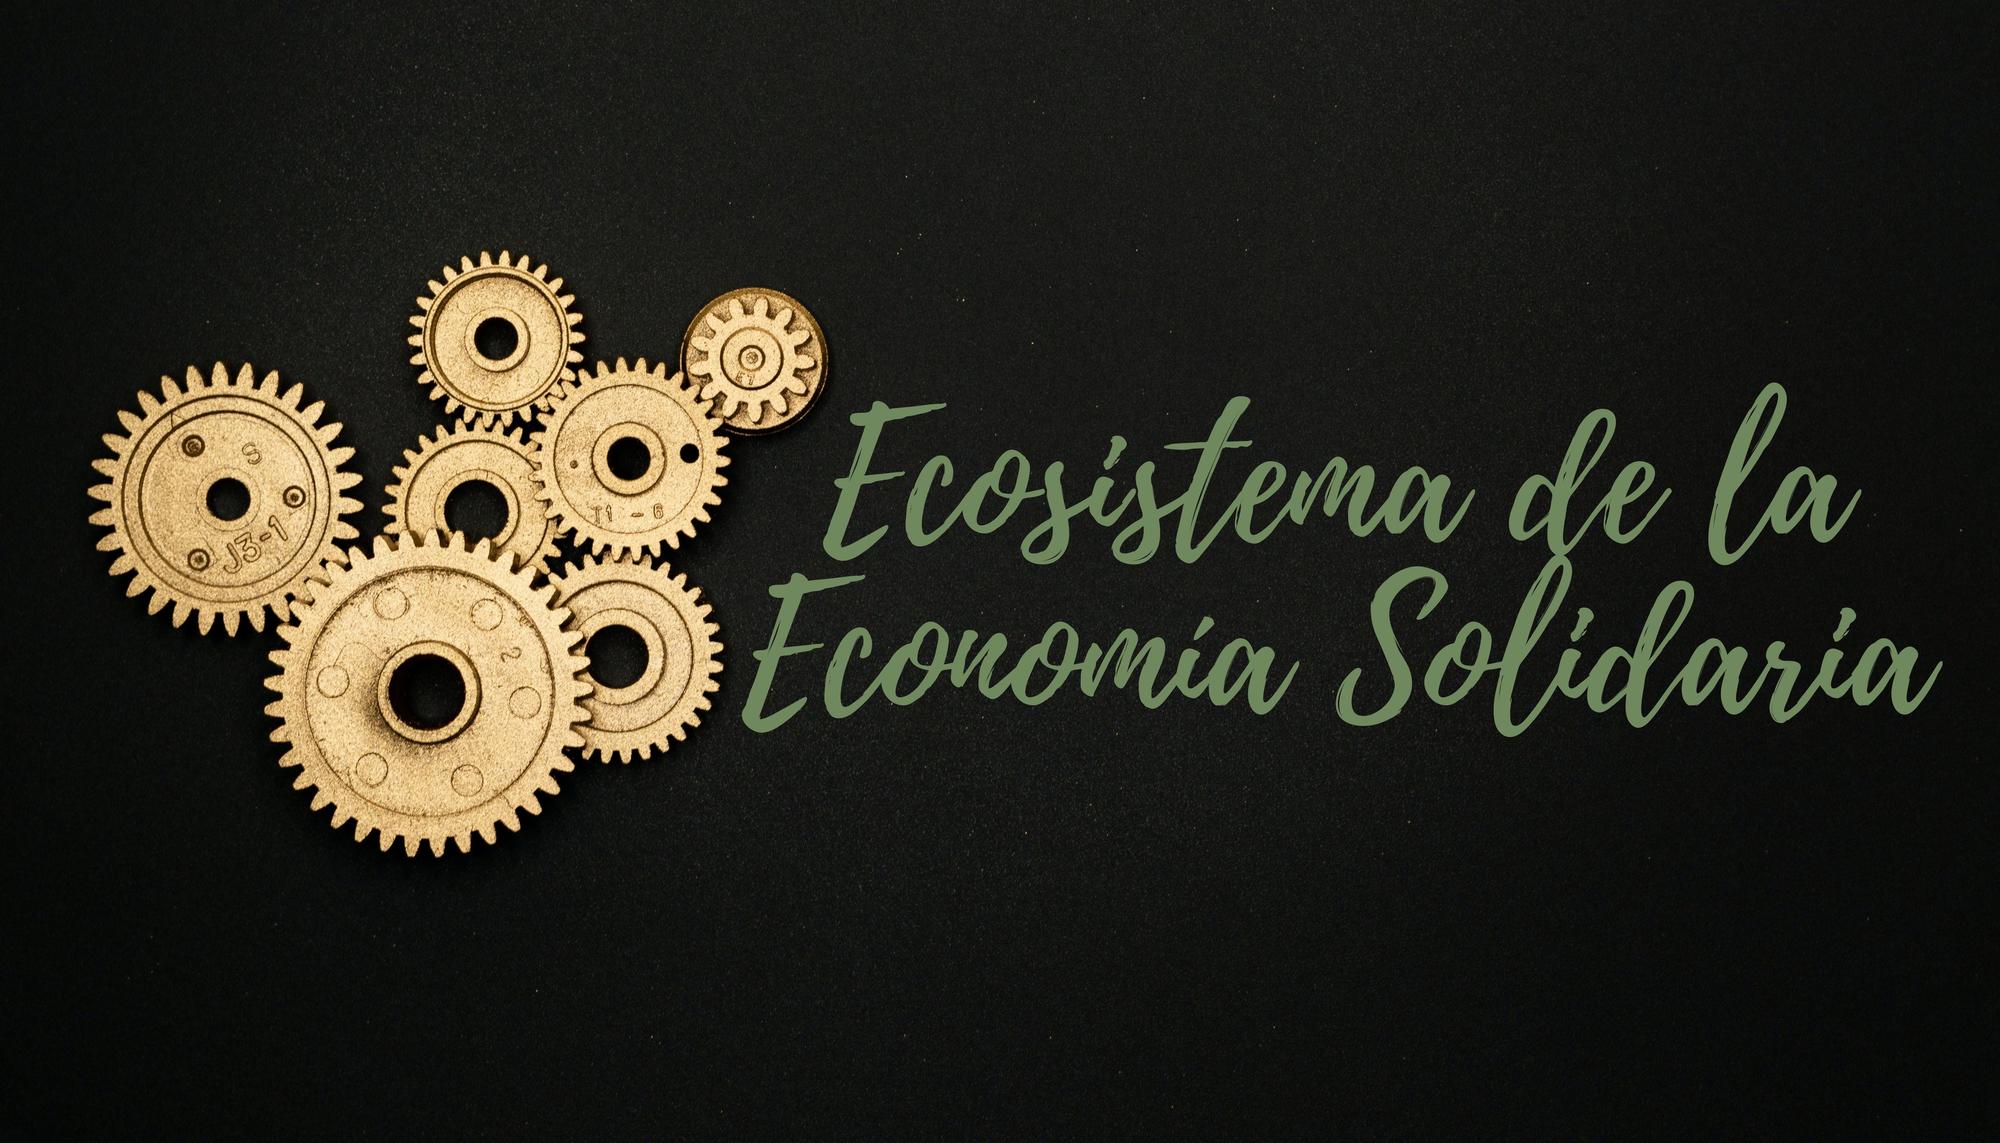 Ecosistema de la Economía Solidaria